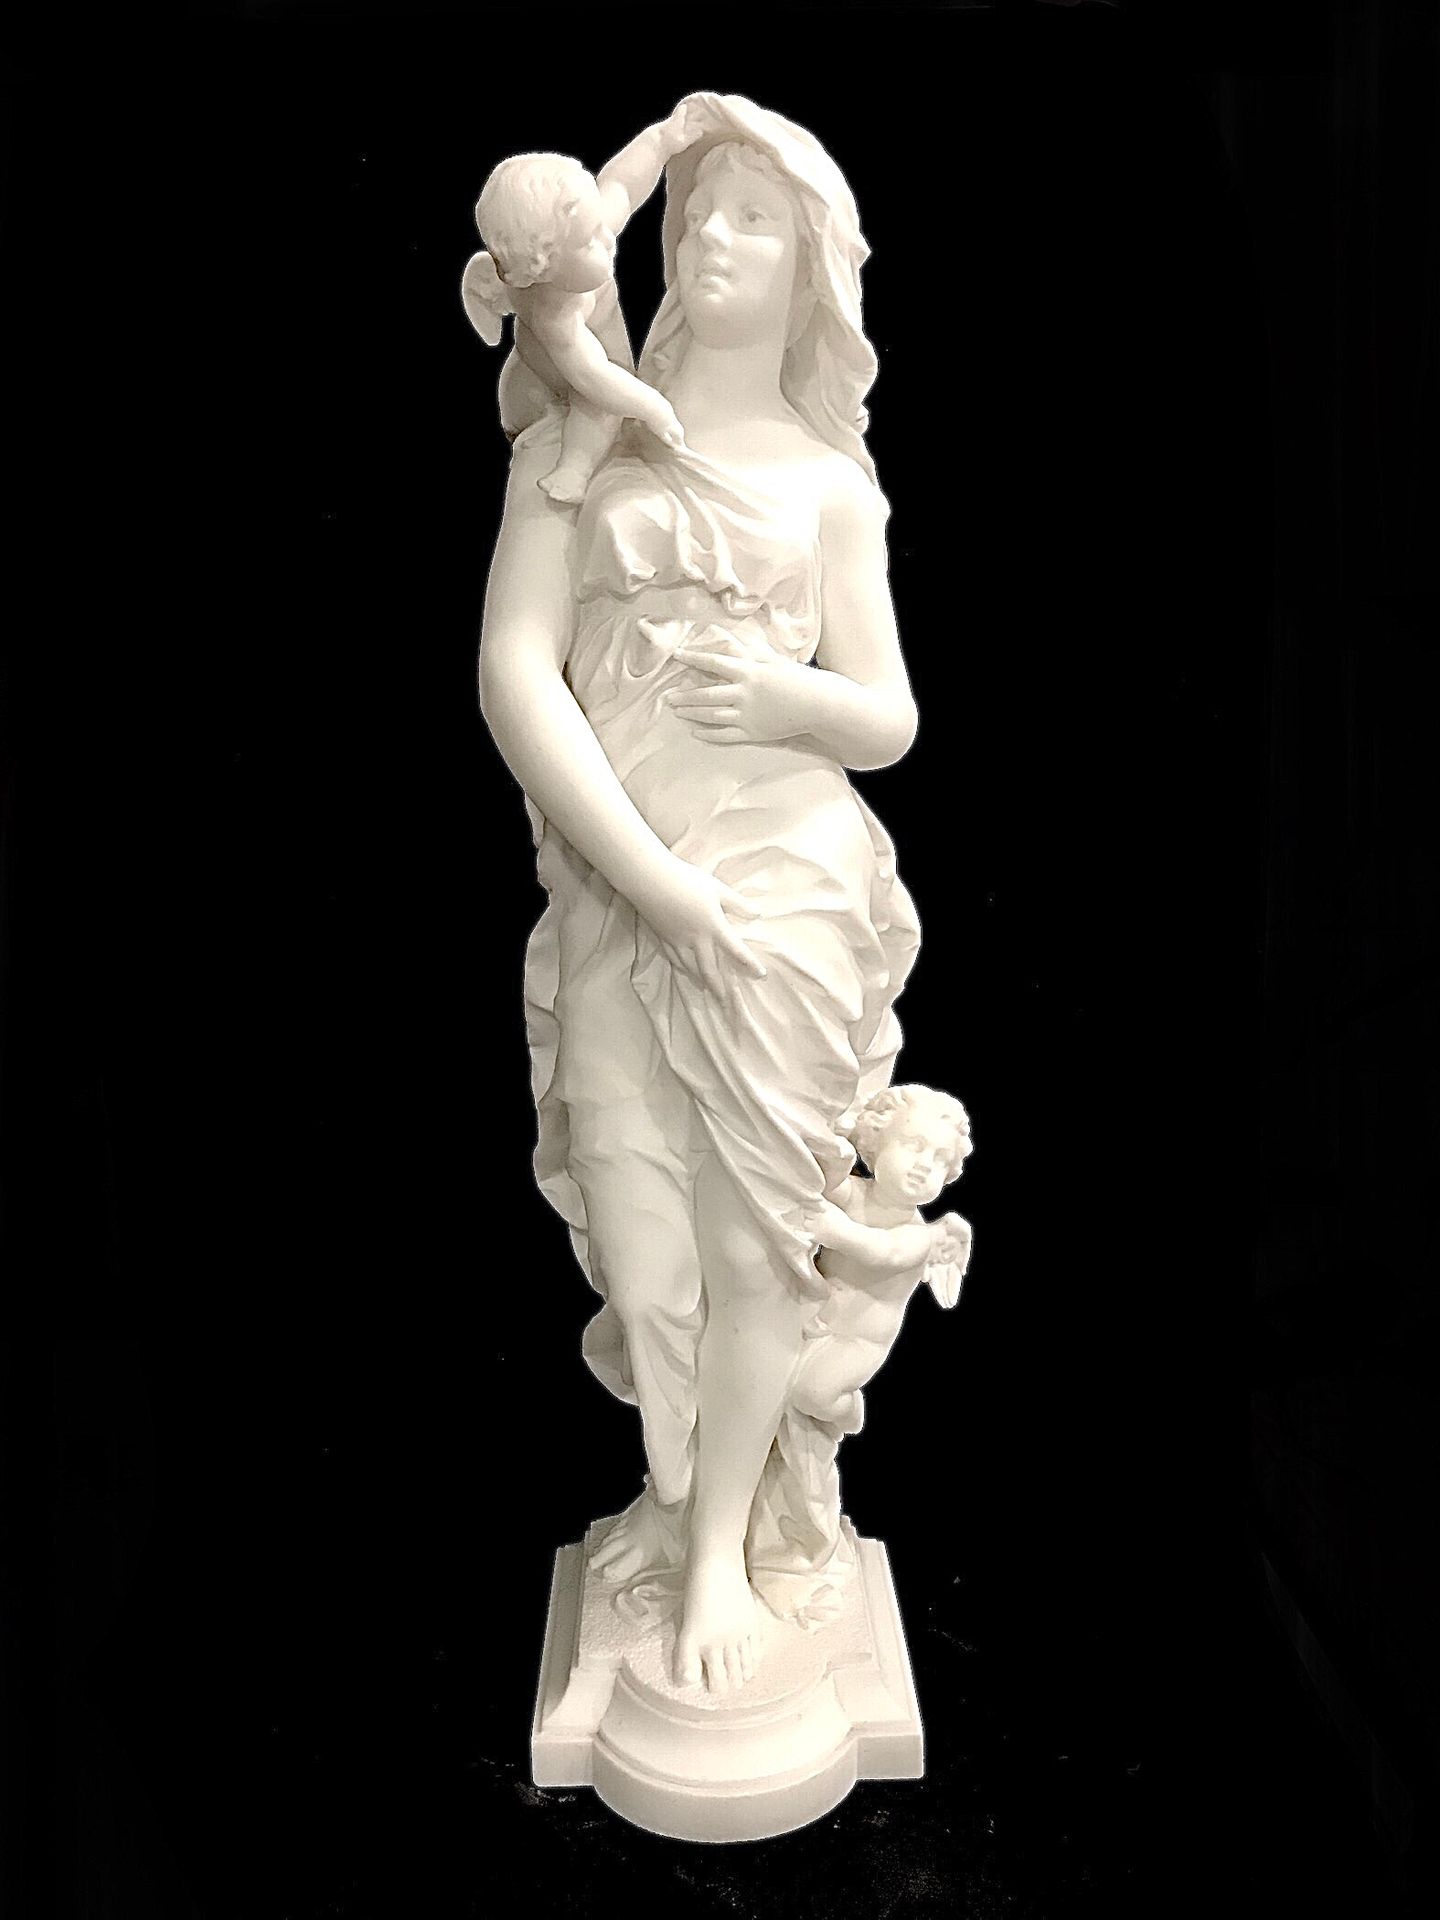 Null 
阿纳托尔-马凯-德-瓦塞洛 1840-1904

金星和两个恋人。 

卡拉拉大理石雕塑，土墩上有签名和日期 "76"。

高度为85厘米。